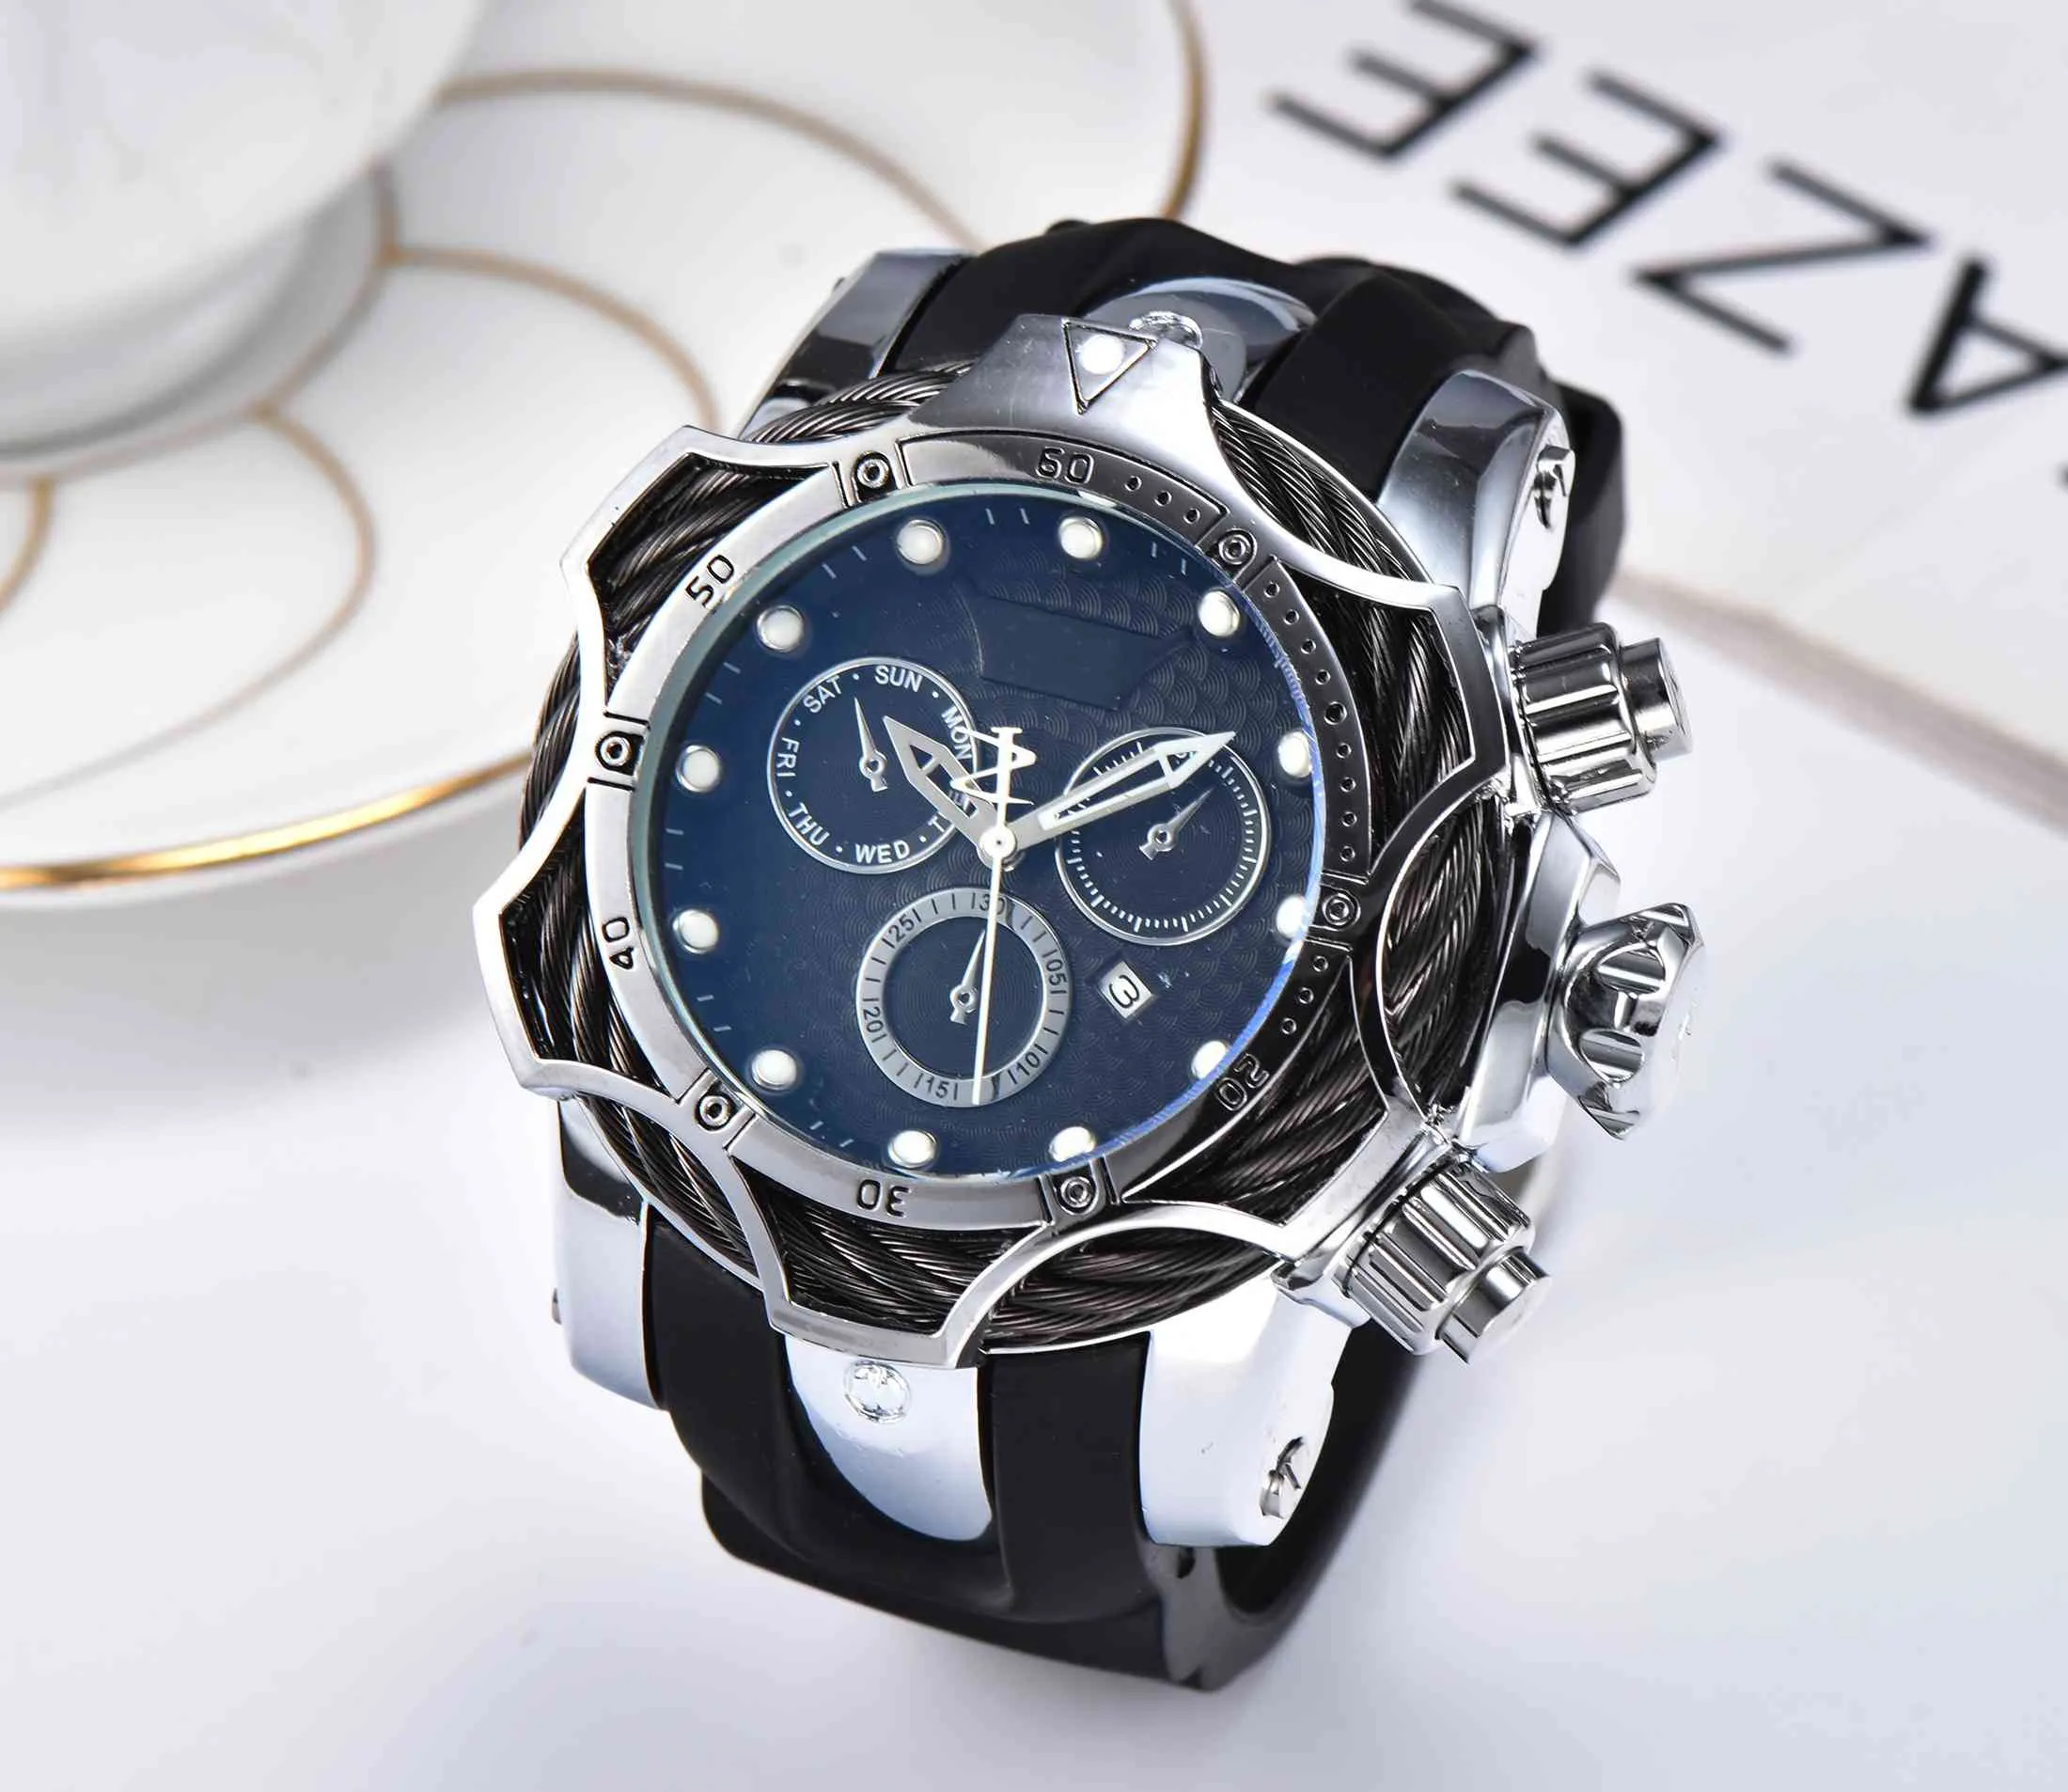 TA montres de luxe en or hommes Sport montres à Quartz chronographe Auto date bande de caoutchouc montre-bracelet pour homme gift211E